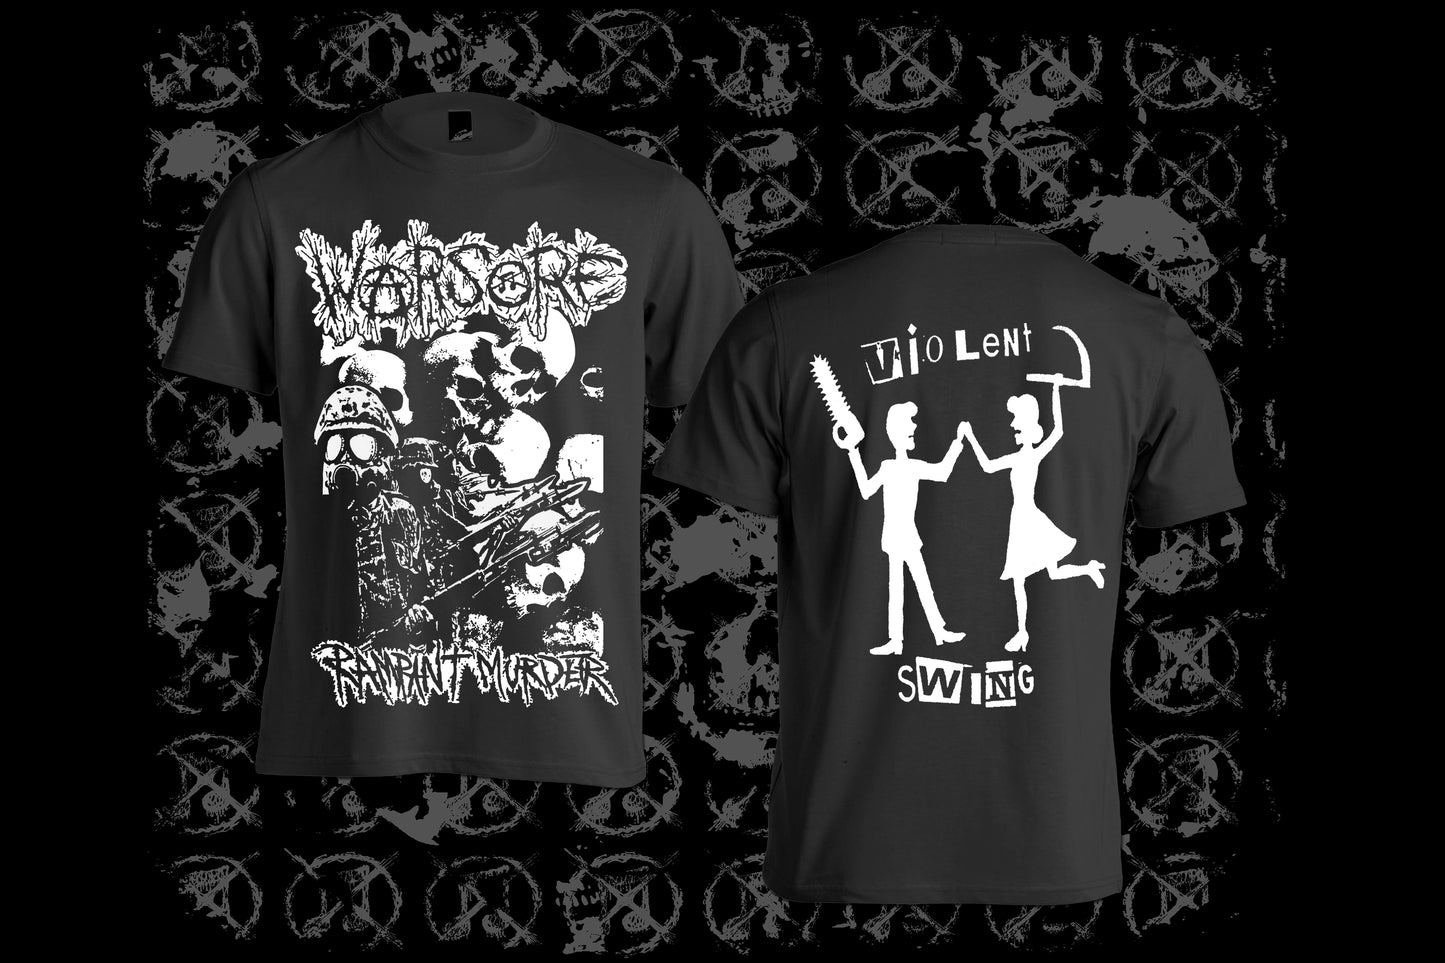 WARSORE - Rampant Murder T-shirt